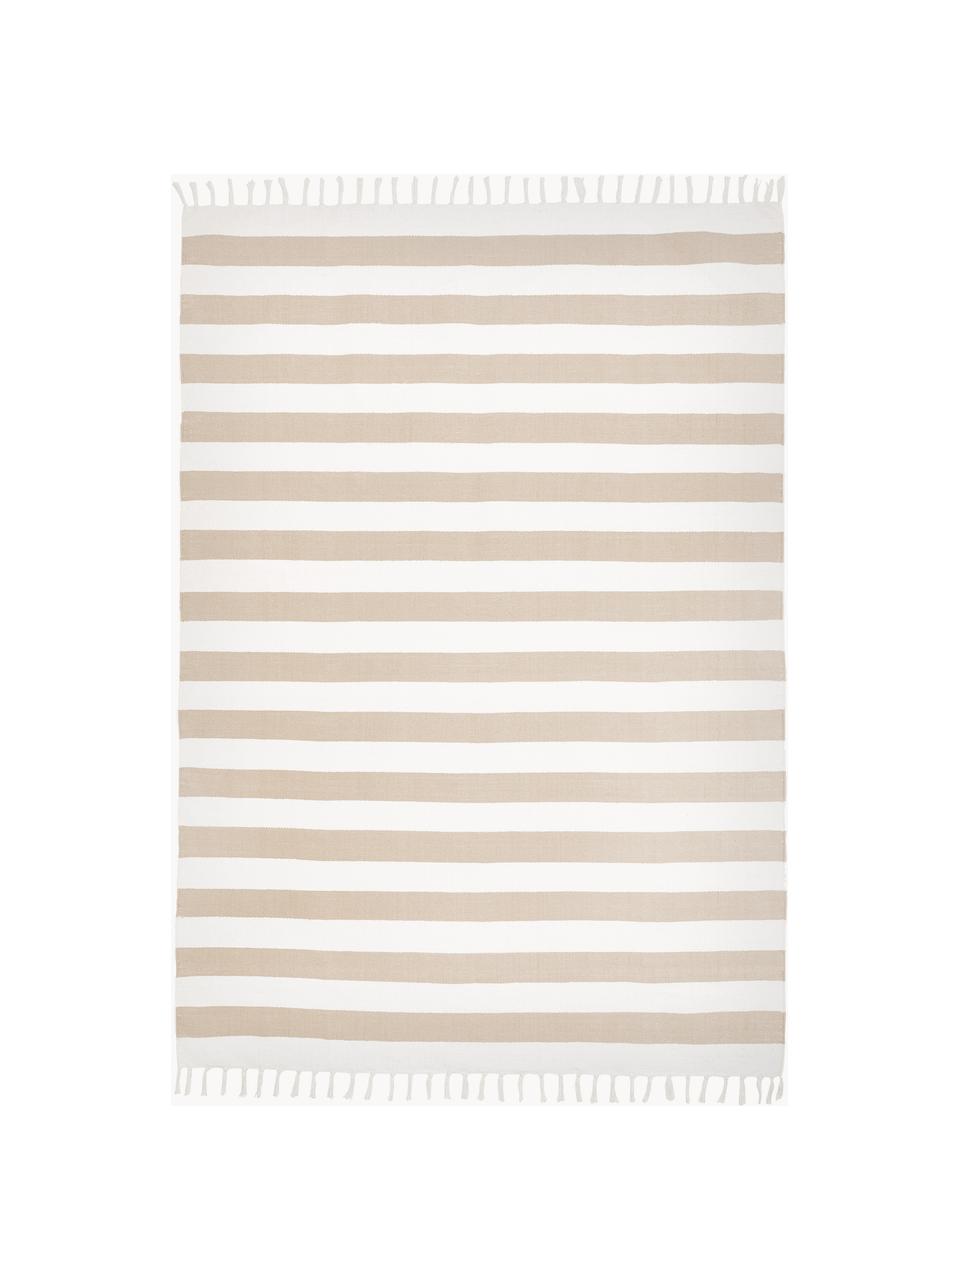 Ručně tkaný pruhovaný bavlněný koberec Blocker, 100 % bavlna, s certifikací GRS, Krémově bílá, béžová, Š 70 cm, D 140 cm (velikost XS)